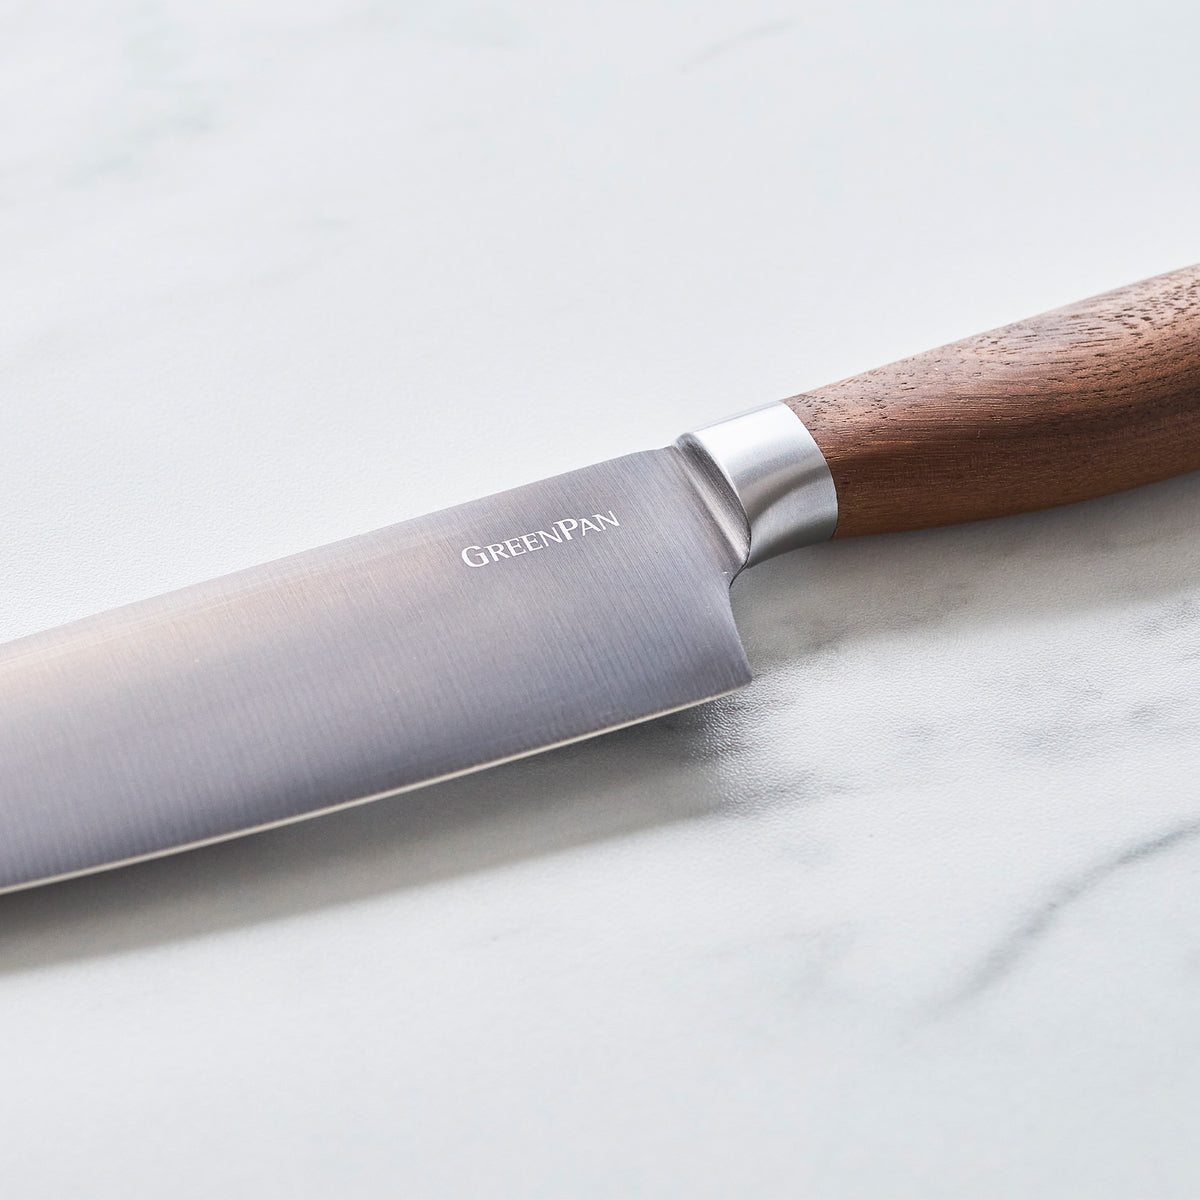 Premiere Titanium Cutlery 4-Piece Steak Knife Set with Walnut Handles